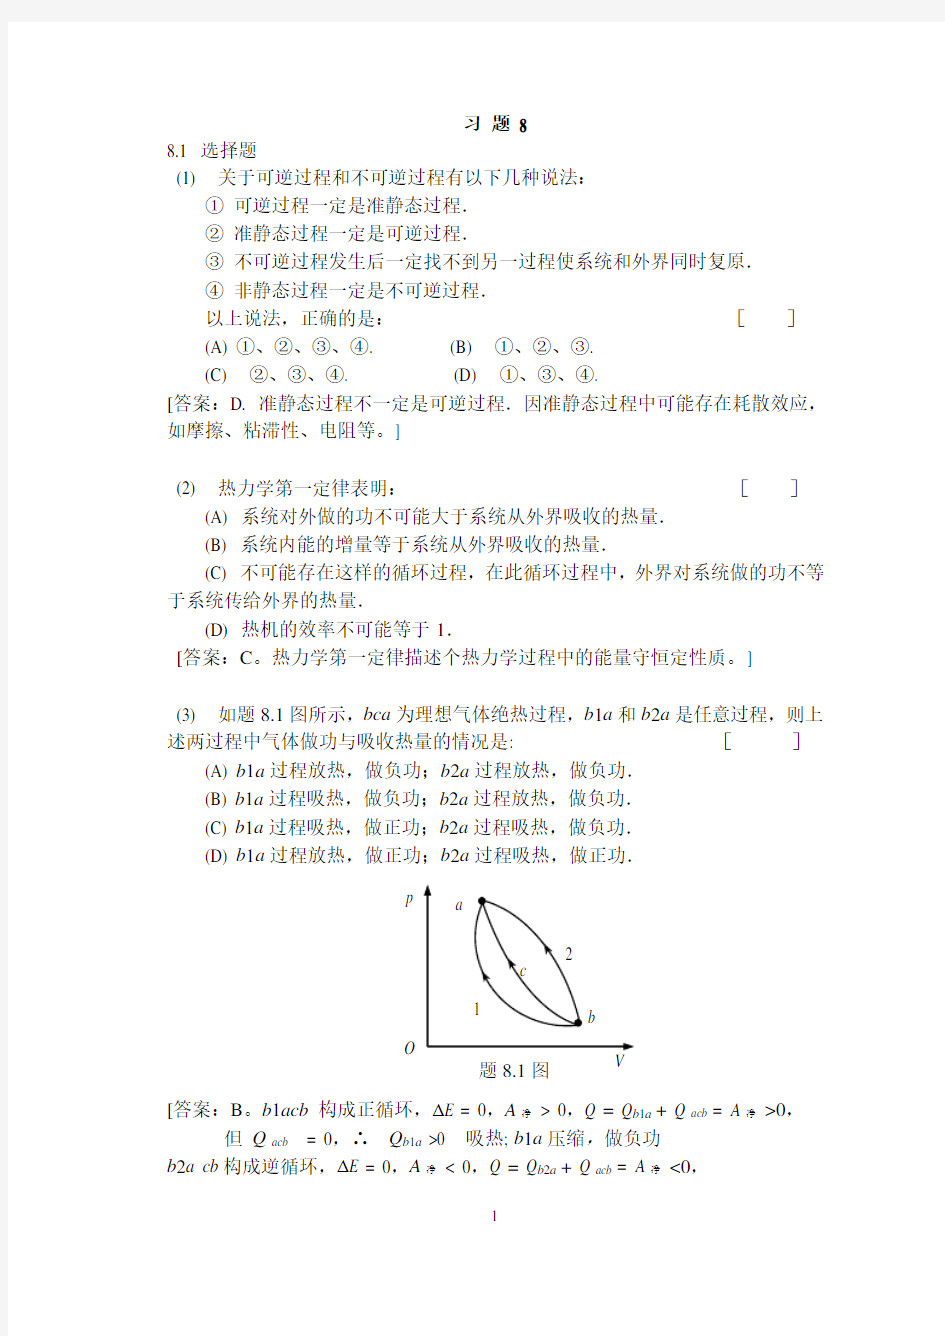 大学物理学 (第3版.修订版) 北京邮电大学出版社 上册 第八章习题8答案..